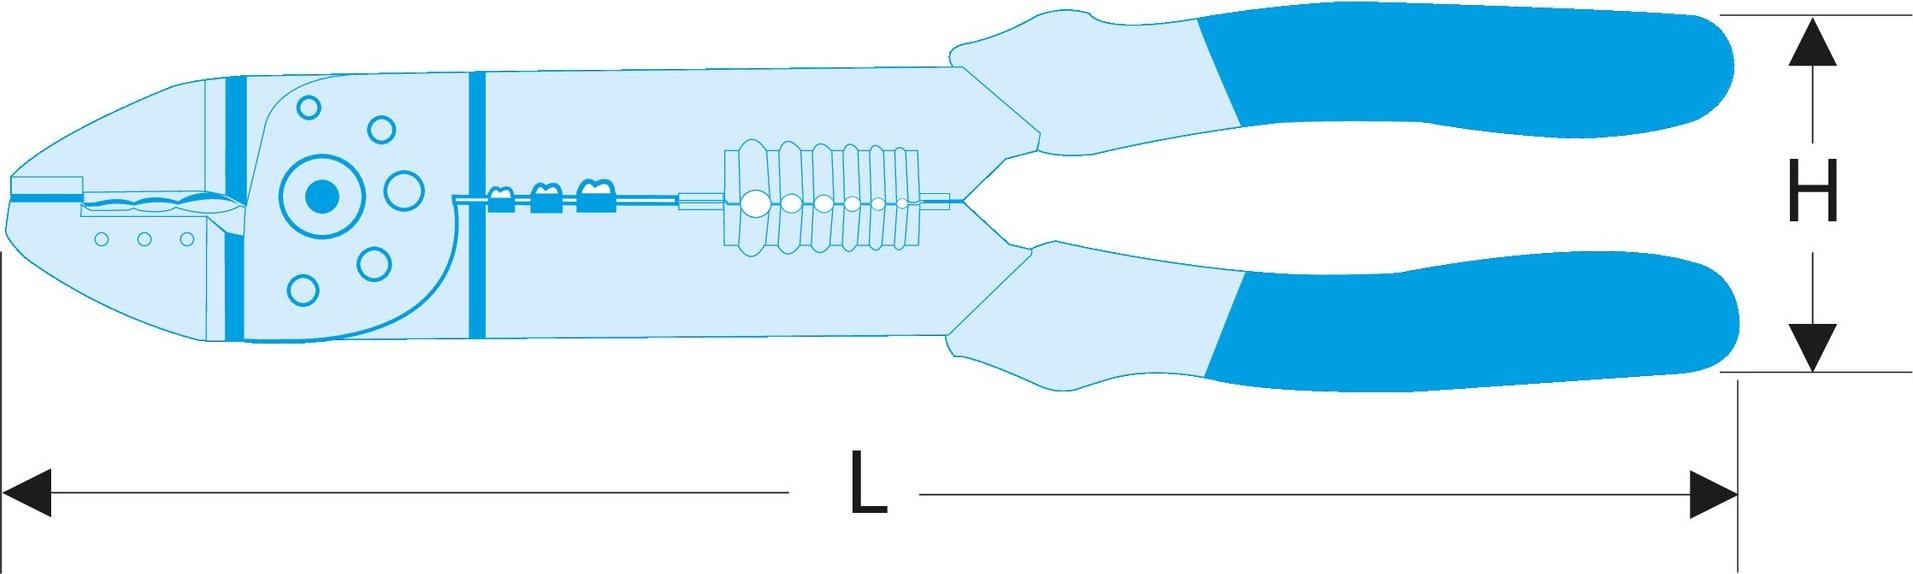 Standard-Anpresszange für isolierte Kabelverbindungen